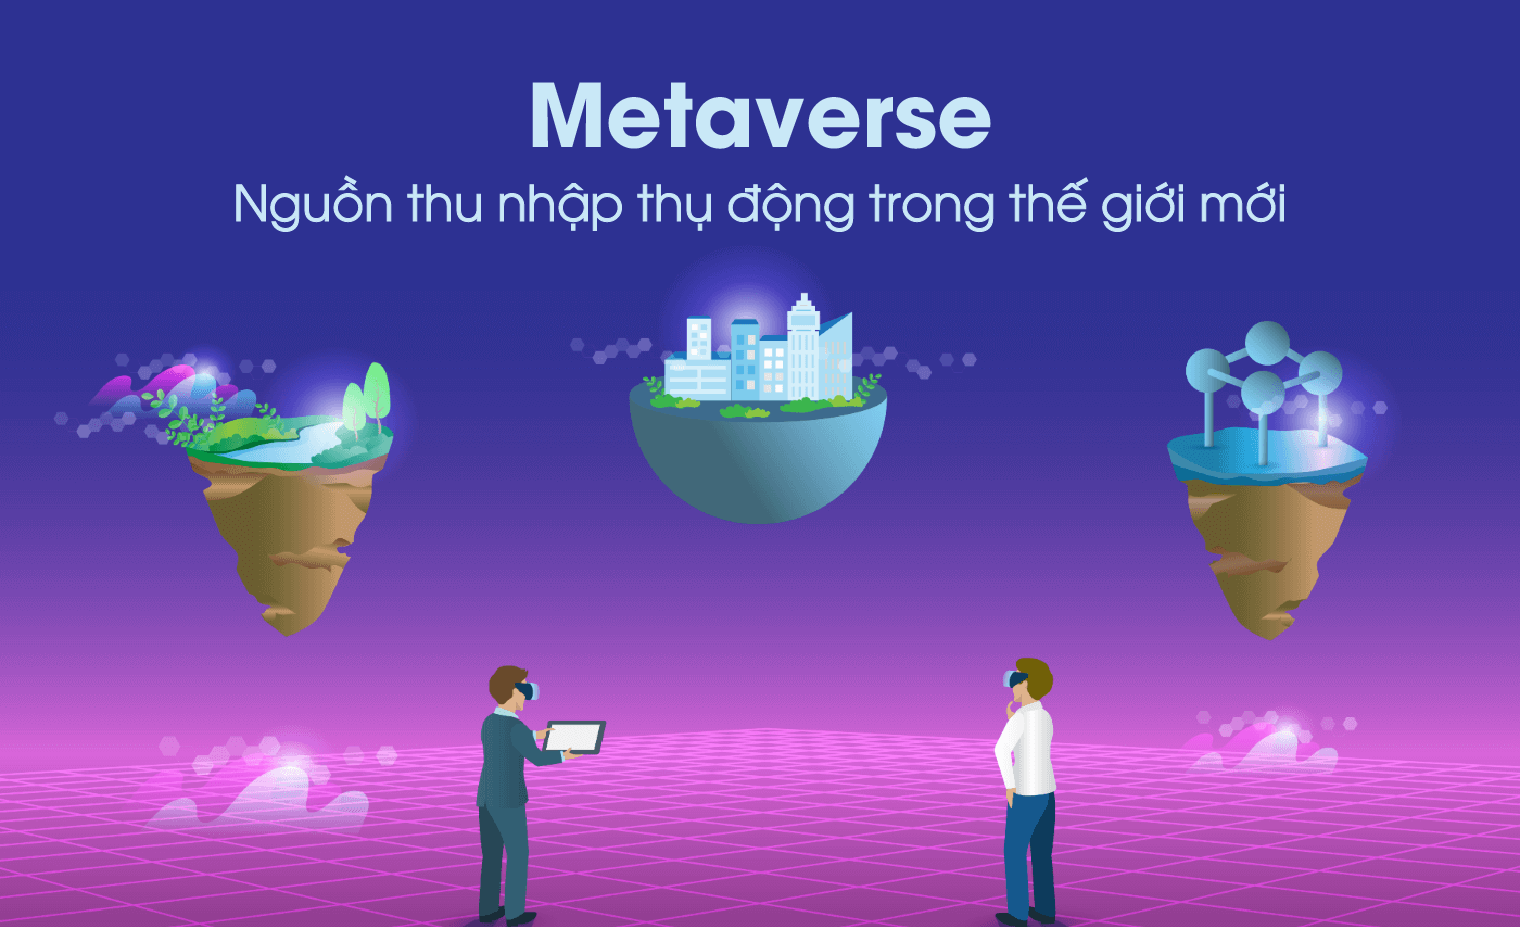 Metaverse - Nguồn thu nhập thụ động trong thế giới mới